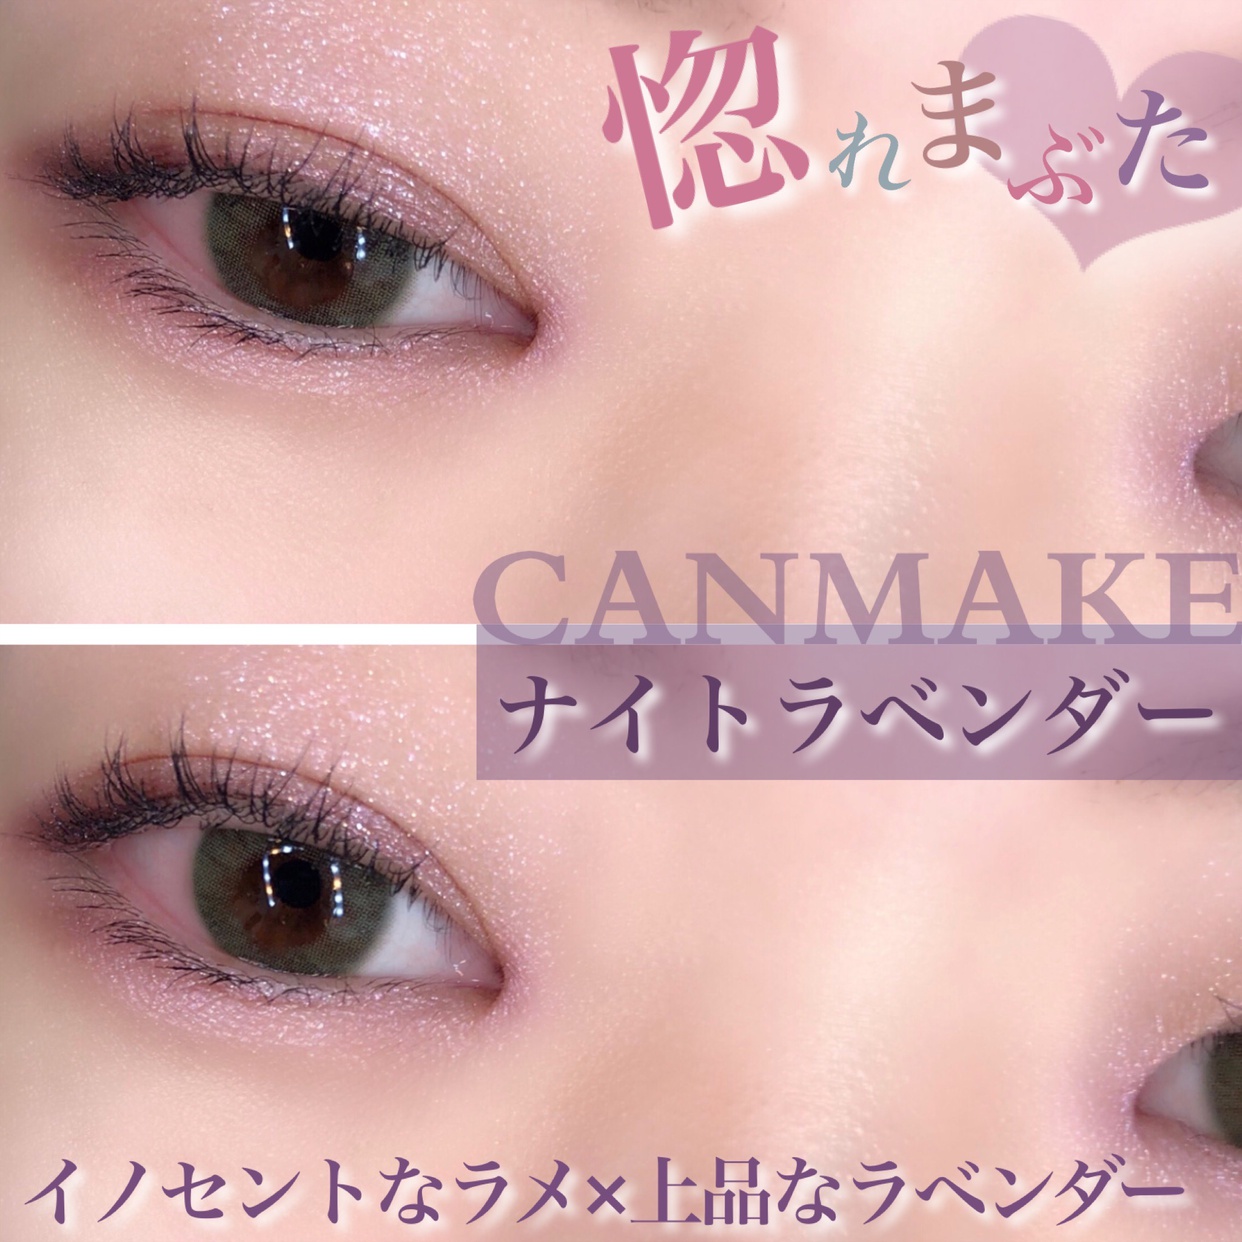 CANMAKE(キャンメイク) ジューシーピュアアイズを使ったsatomiさんのクチコミ画像1